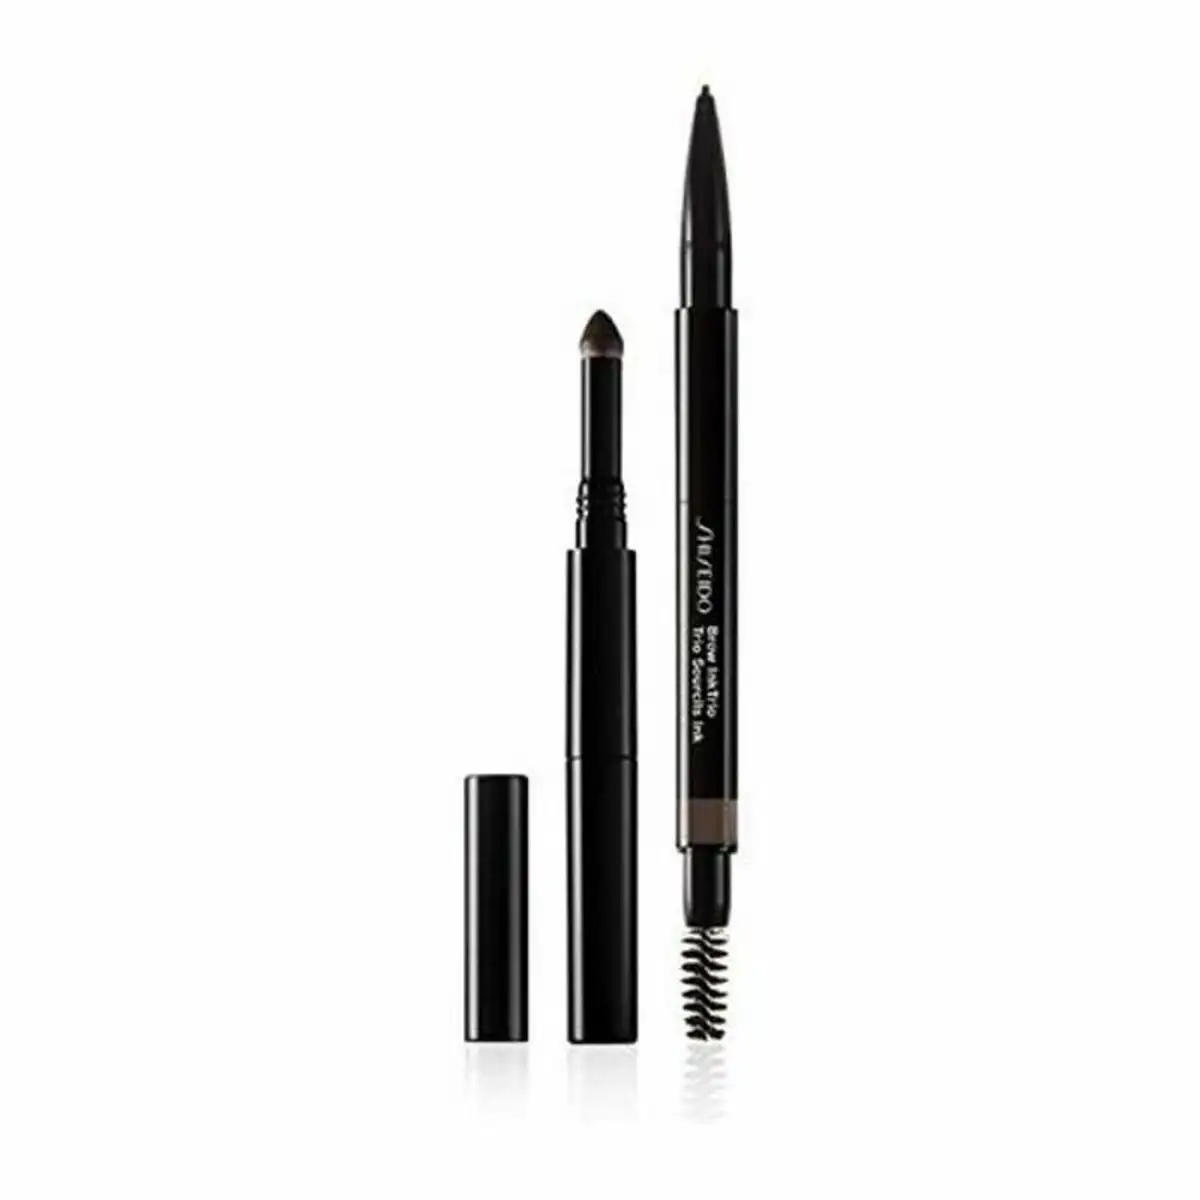 Crayon a sourcils shiseido brow ink trio no 03_6363. DIAYTAR SENEGAL - Votre Portail Vers l'Exclusivité. Explorez notre boutique en ligne pour trouver des produits uniques et exclusifs, conçus pour les amateurs de qualité.